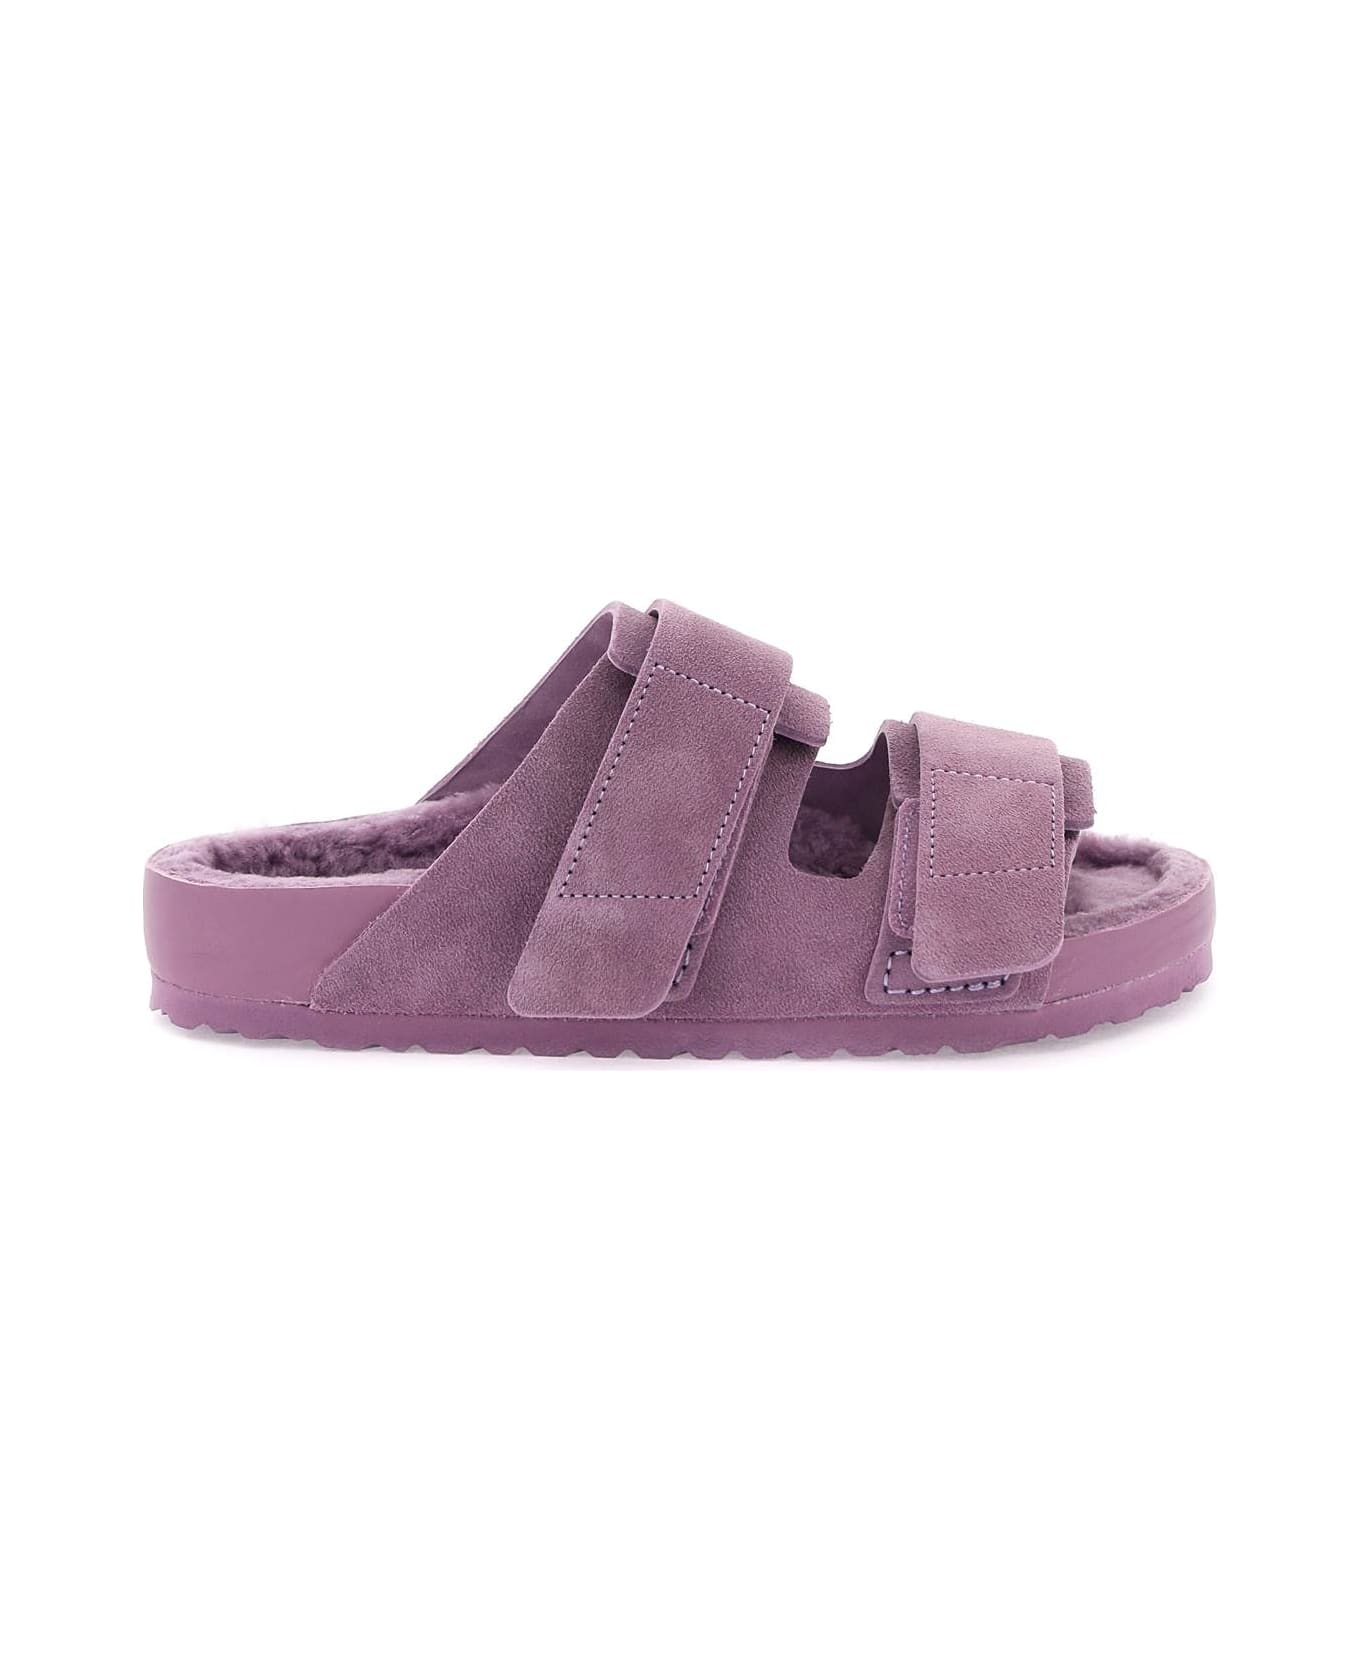 Birkenstock Uji Slides - MAUVE (Purple)